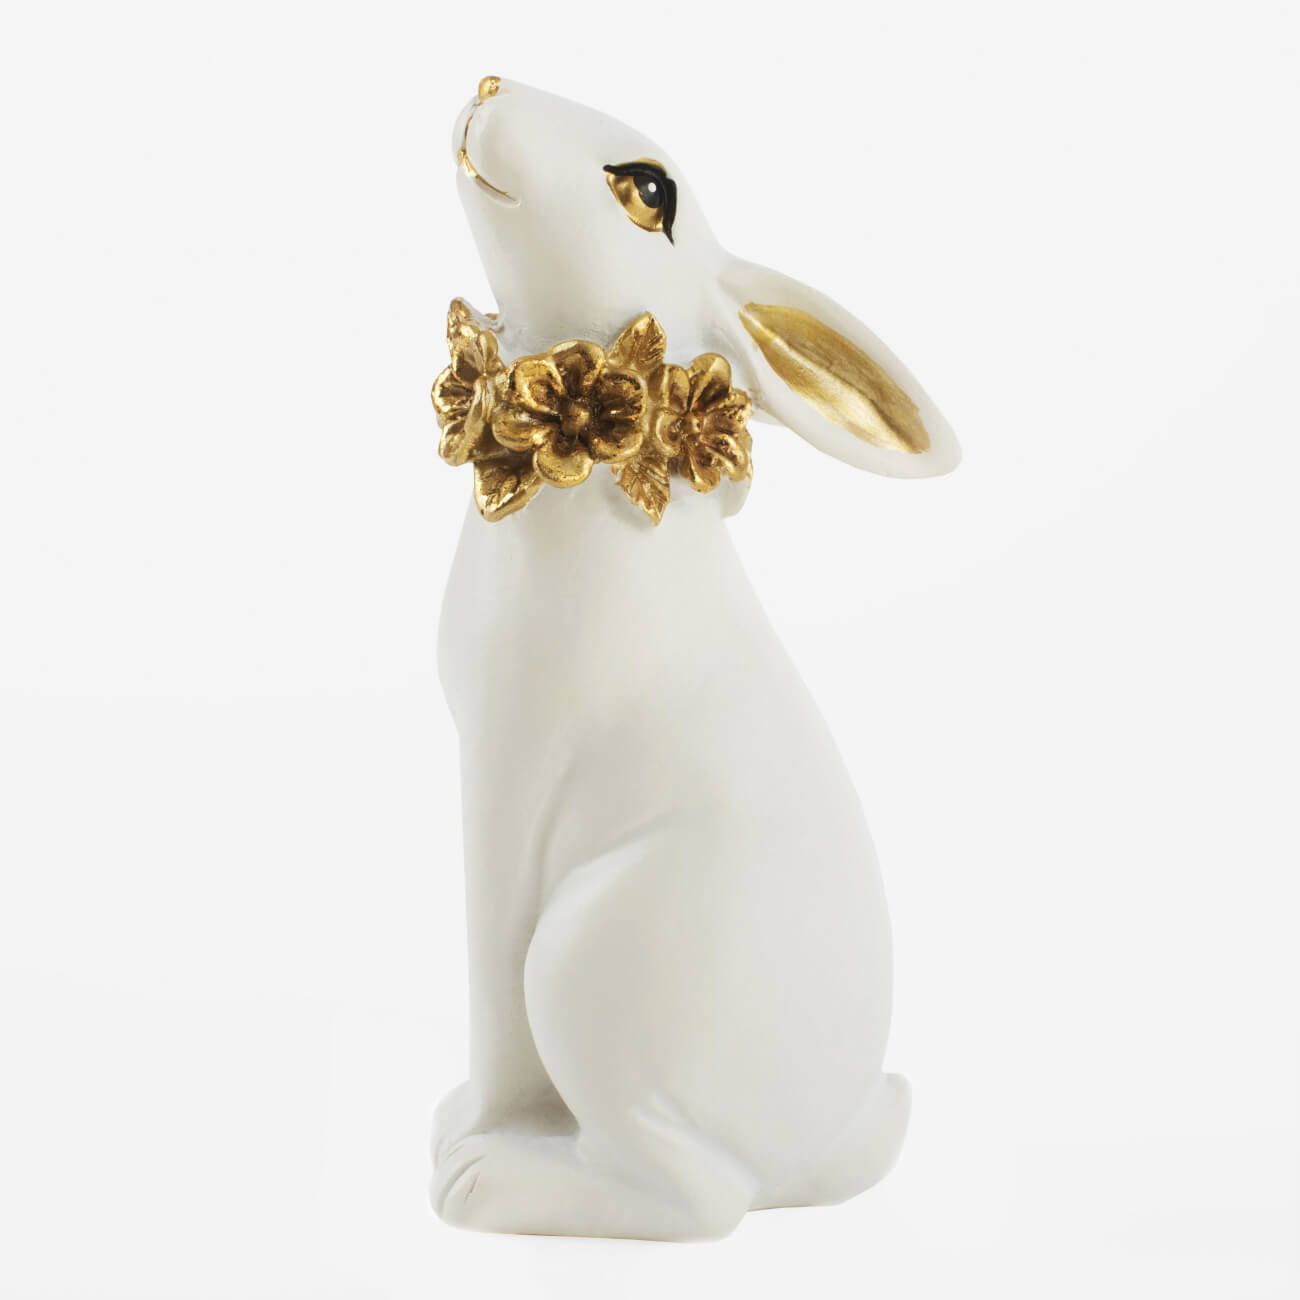 статуэтка 26 см полирезин золотистая поза лотоса face Статуэтка, 13 см, полирезин, бело-золотистая, Кролик с цветочным ожерельем, Easter gold